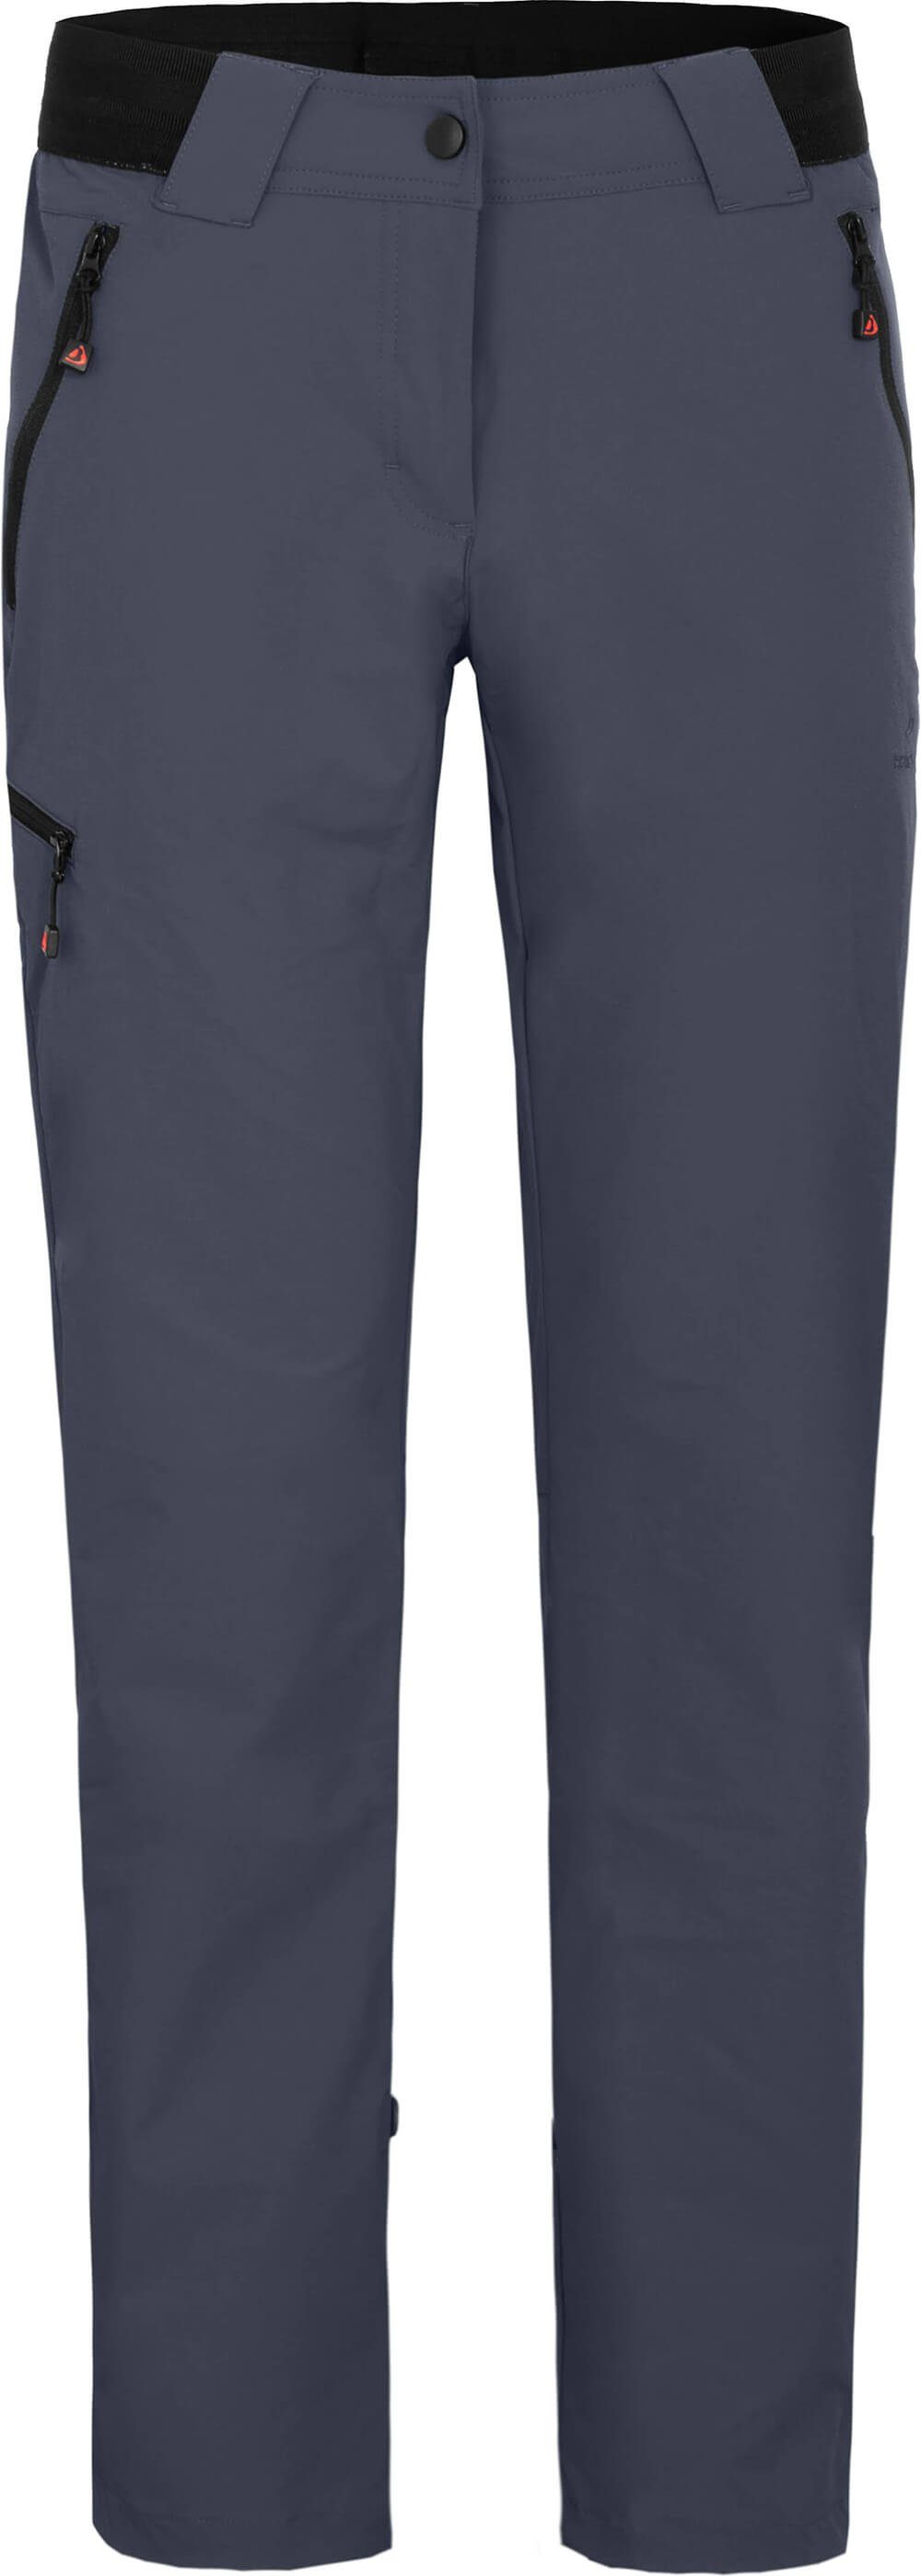 Bergson Outdoorhose VIDAA Wanderhose, Kurzgrößen, leicht, strapazierfähig, COMFORT Damen grau/blau